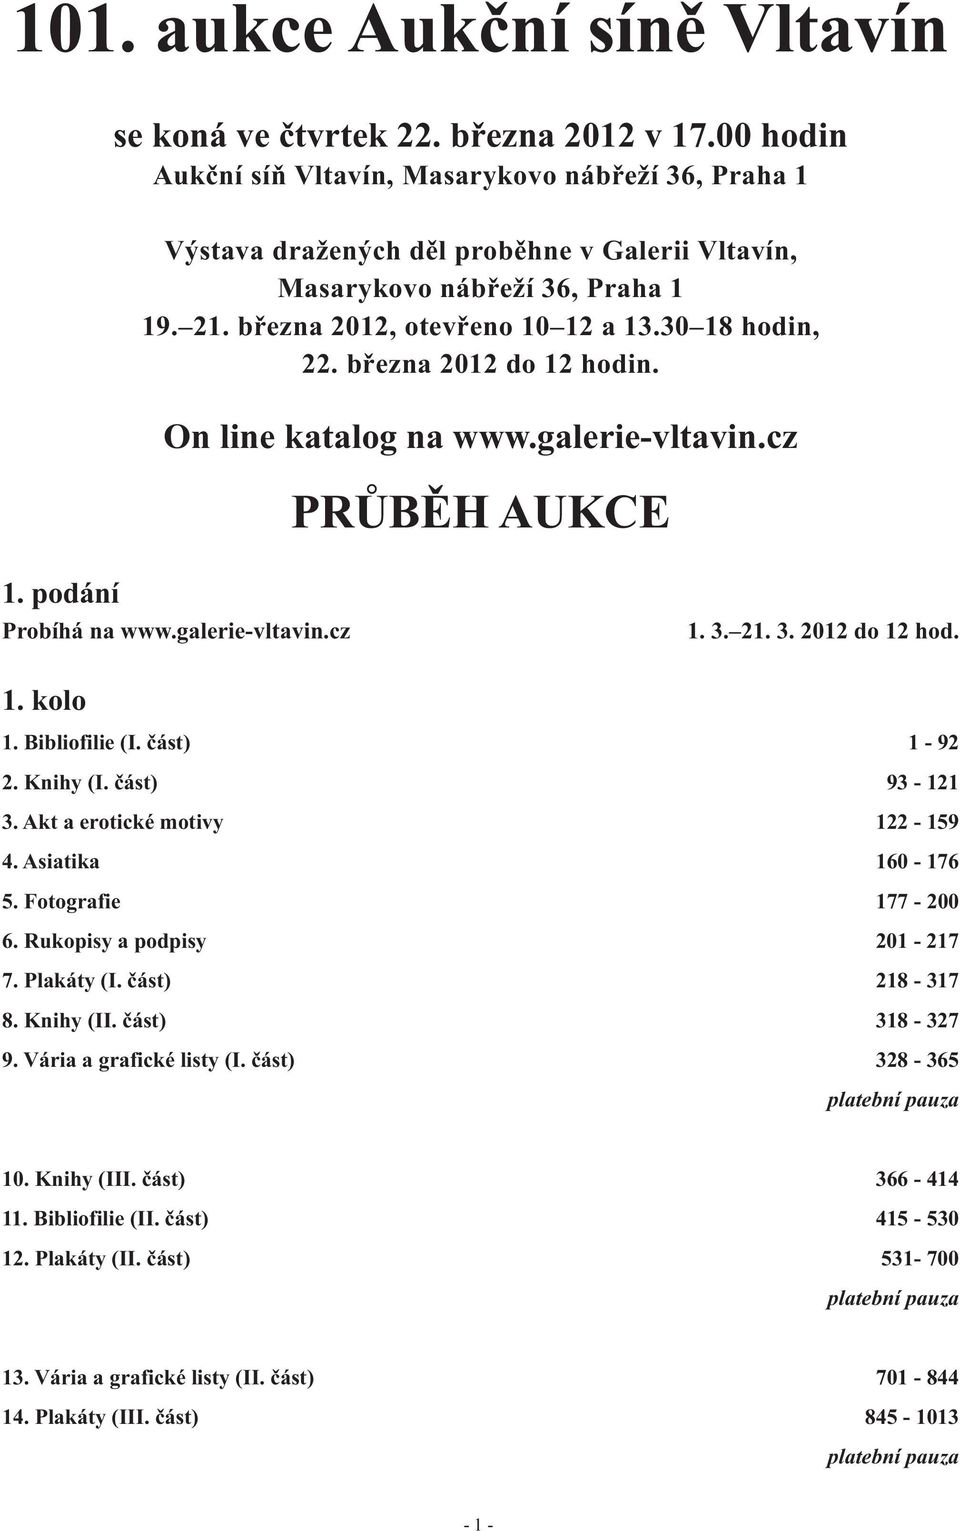 března 2012 do 12 hodin. On line katalog na www.galerie-vltavin.cz PRŮBĚH AUKCE 1. podání Probíhá na www.galerie-vltavin.cz 1. 3. 21. 3. 2012 do 12 hod. 1. kolo 1. Bibliofilie (I. část) 1-92 2.